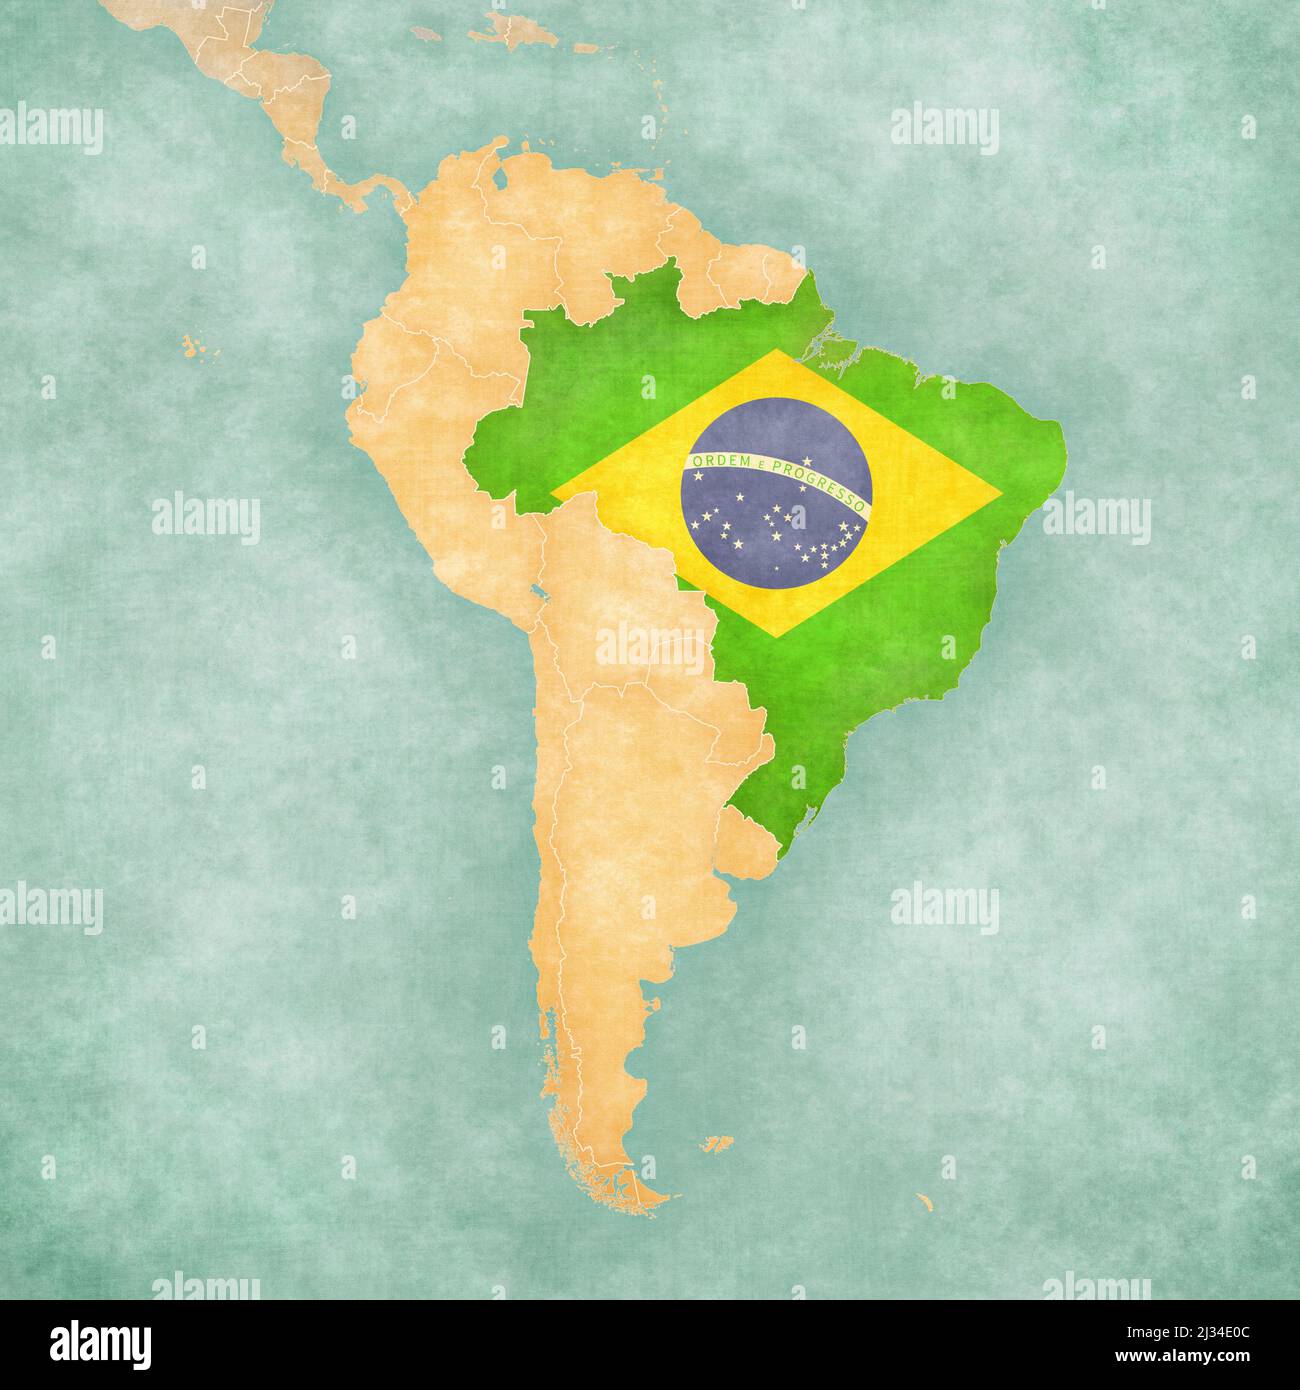 Brésil (drapeau brésilien) sur la carte de l'Amérique du Sud. La carte est dans un style vintage d'été et d'humeur ensoleillée. La carte a une atmosphère douce grunge vintage. Banque D'Images